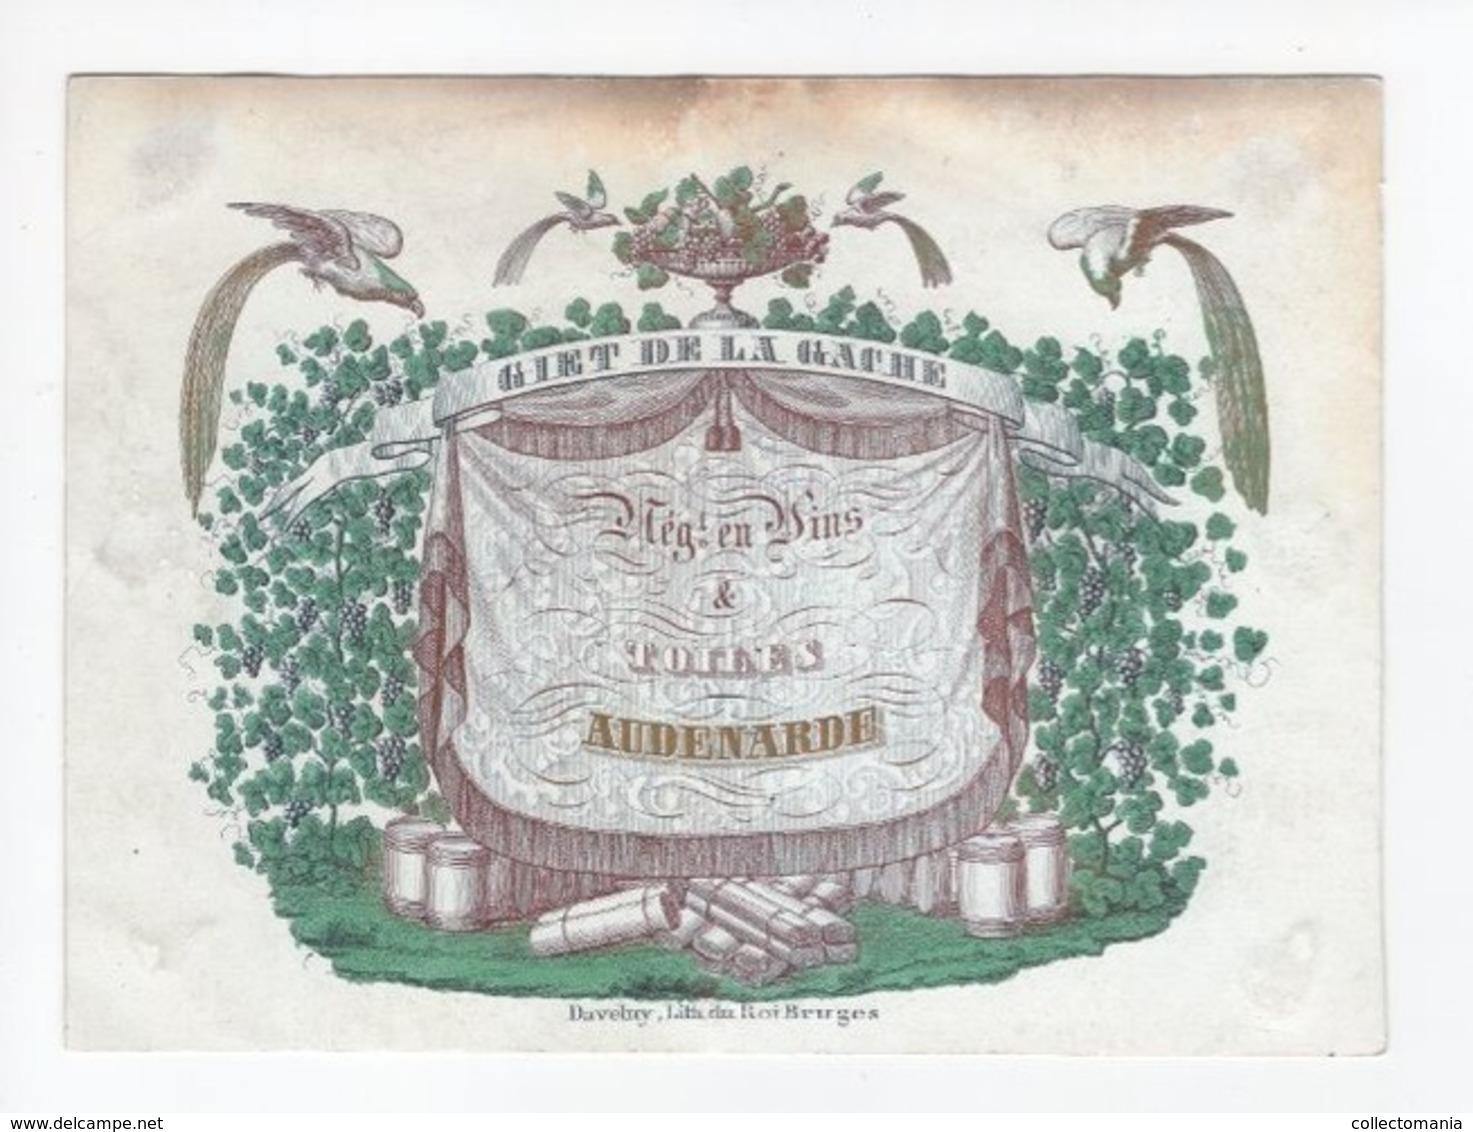 1 Carte Porcelaine  Vins & Toiles  Giet De La Gache  Audenarde Audenaarde Lith.Daveluy Bruges  Afm.:15,5x11,5cm  Ca 1850 - Porcelaine